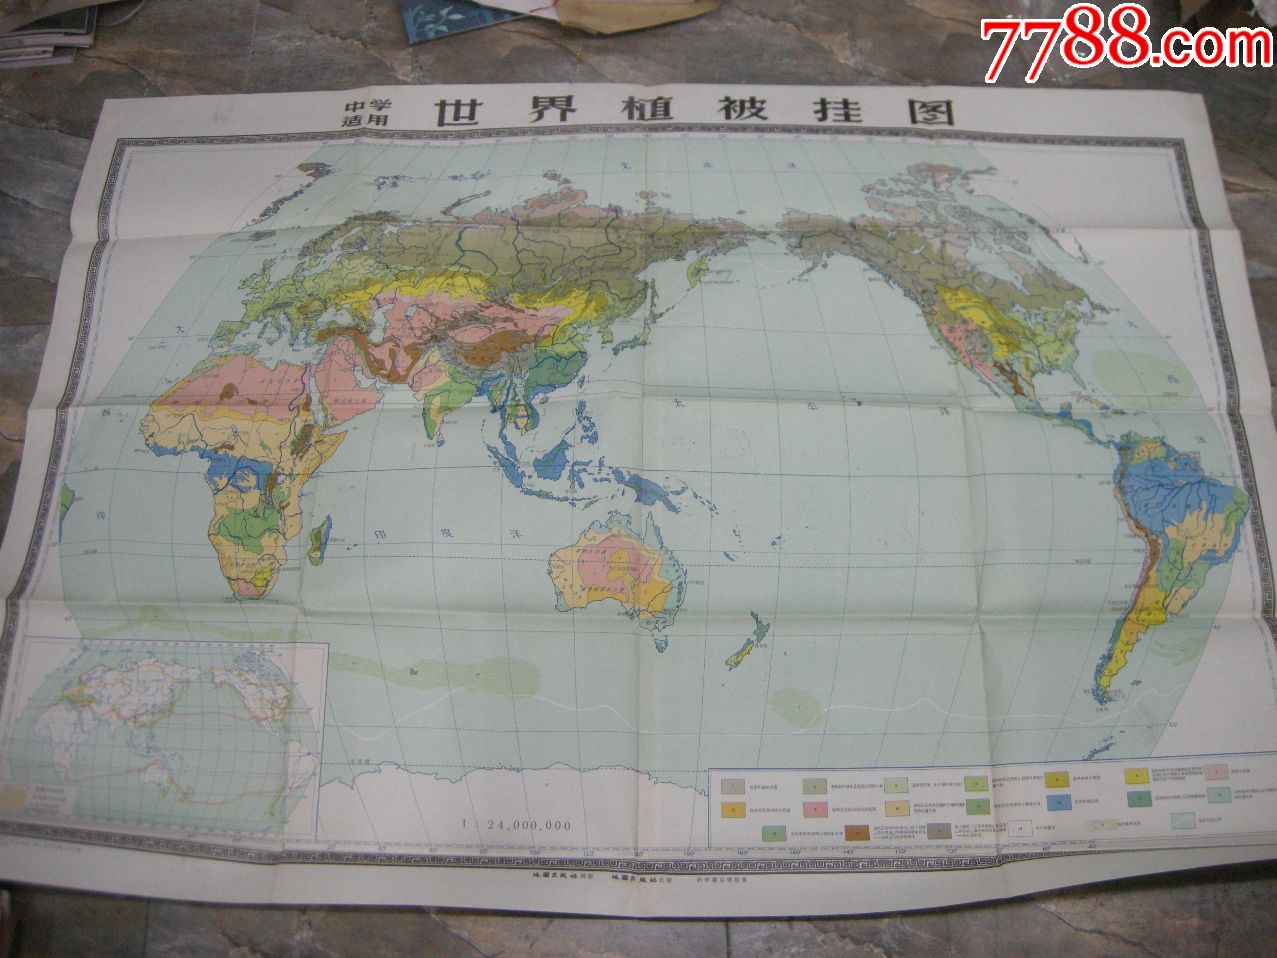 50年代地图,挂图;1950年代版--《世界植被挂图》